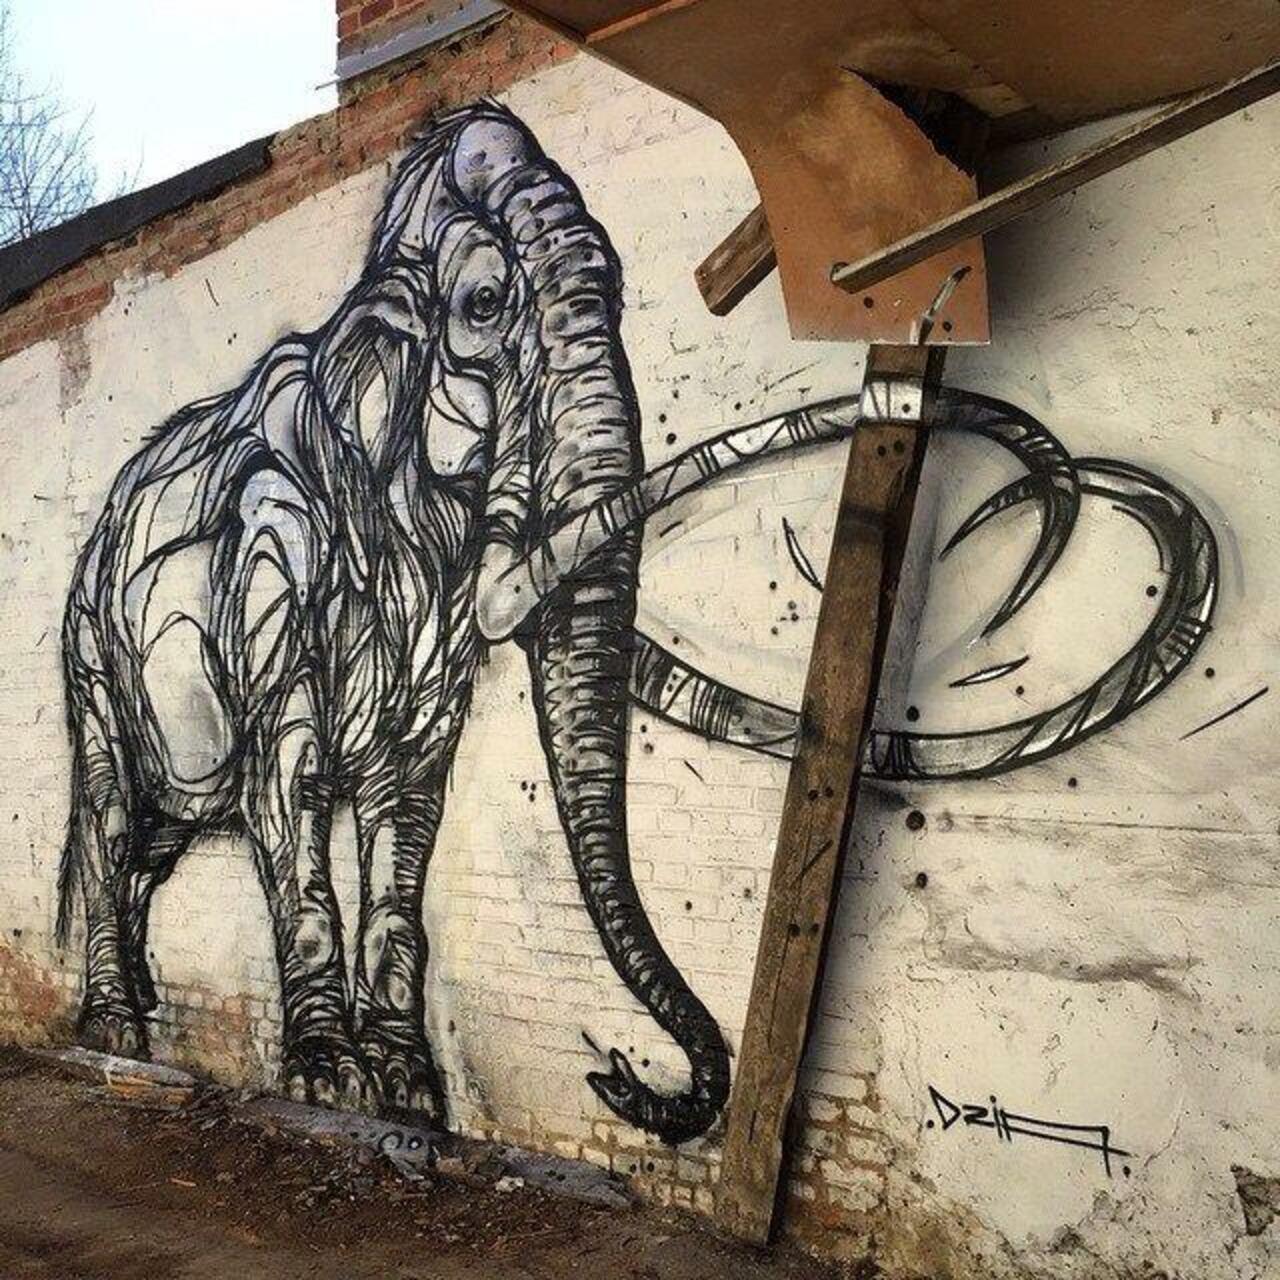 Mammoth. New nature in Street Art wall by DZIA 

#art #graffiti #mural #streetart http://t.co/MND5qMPfZB